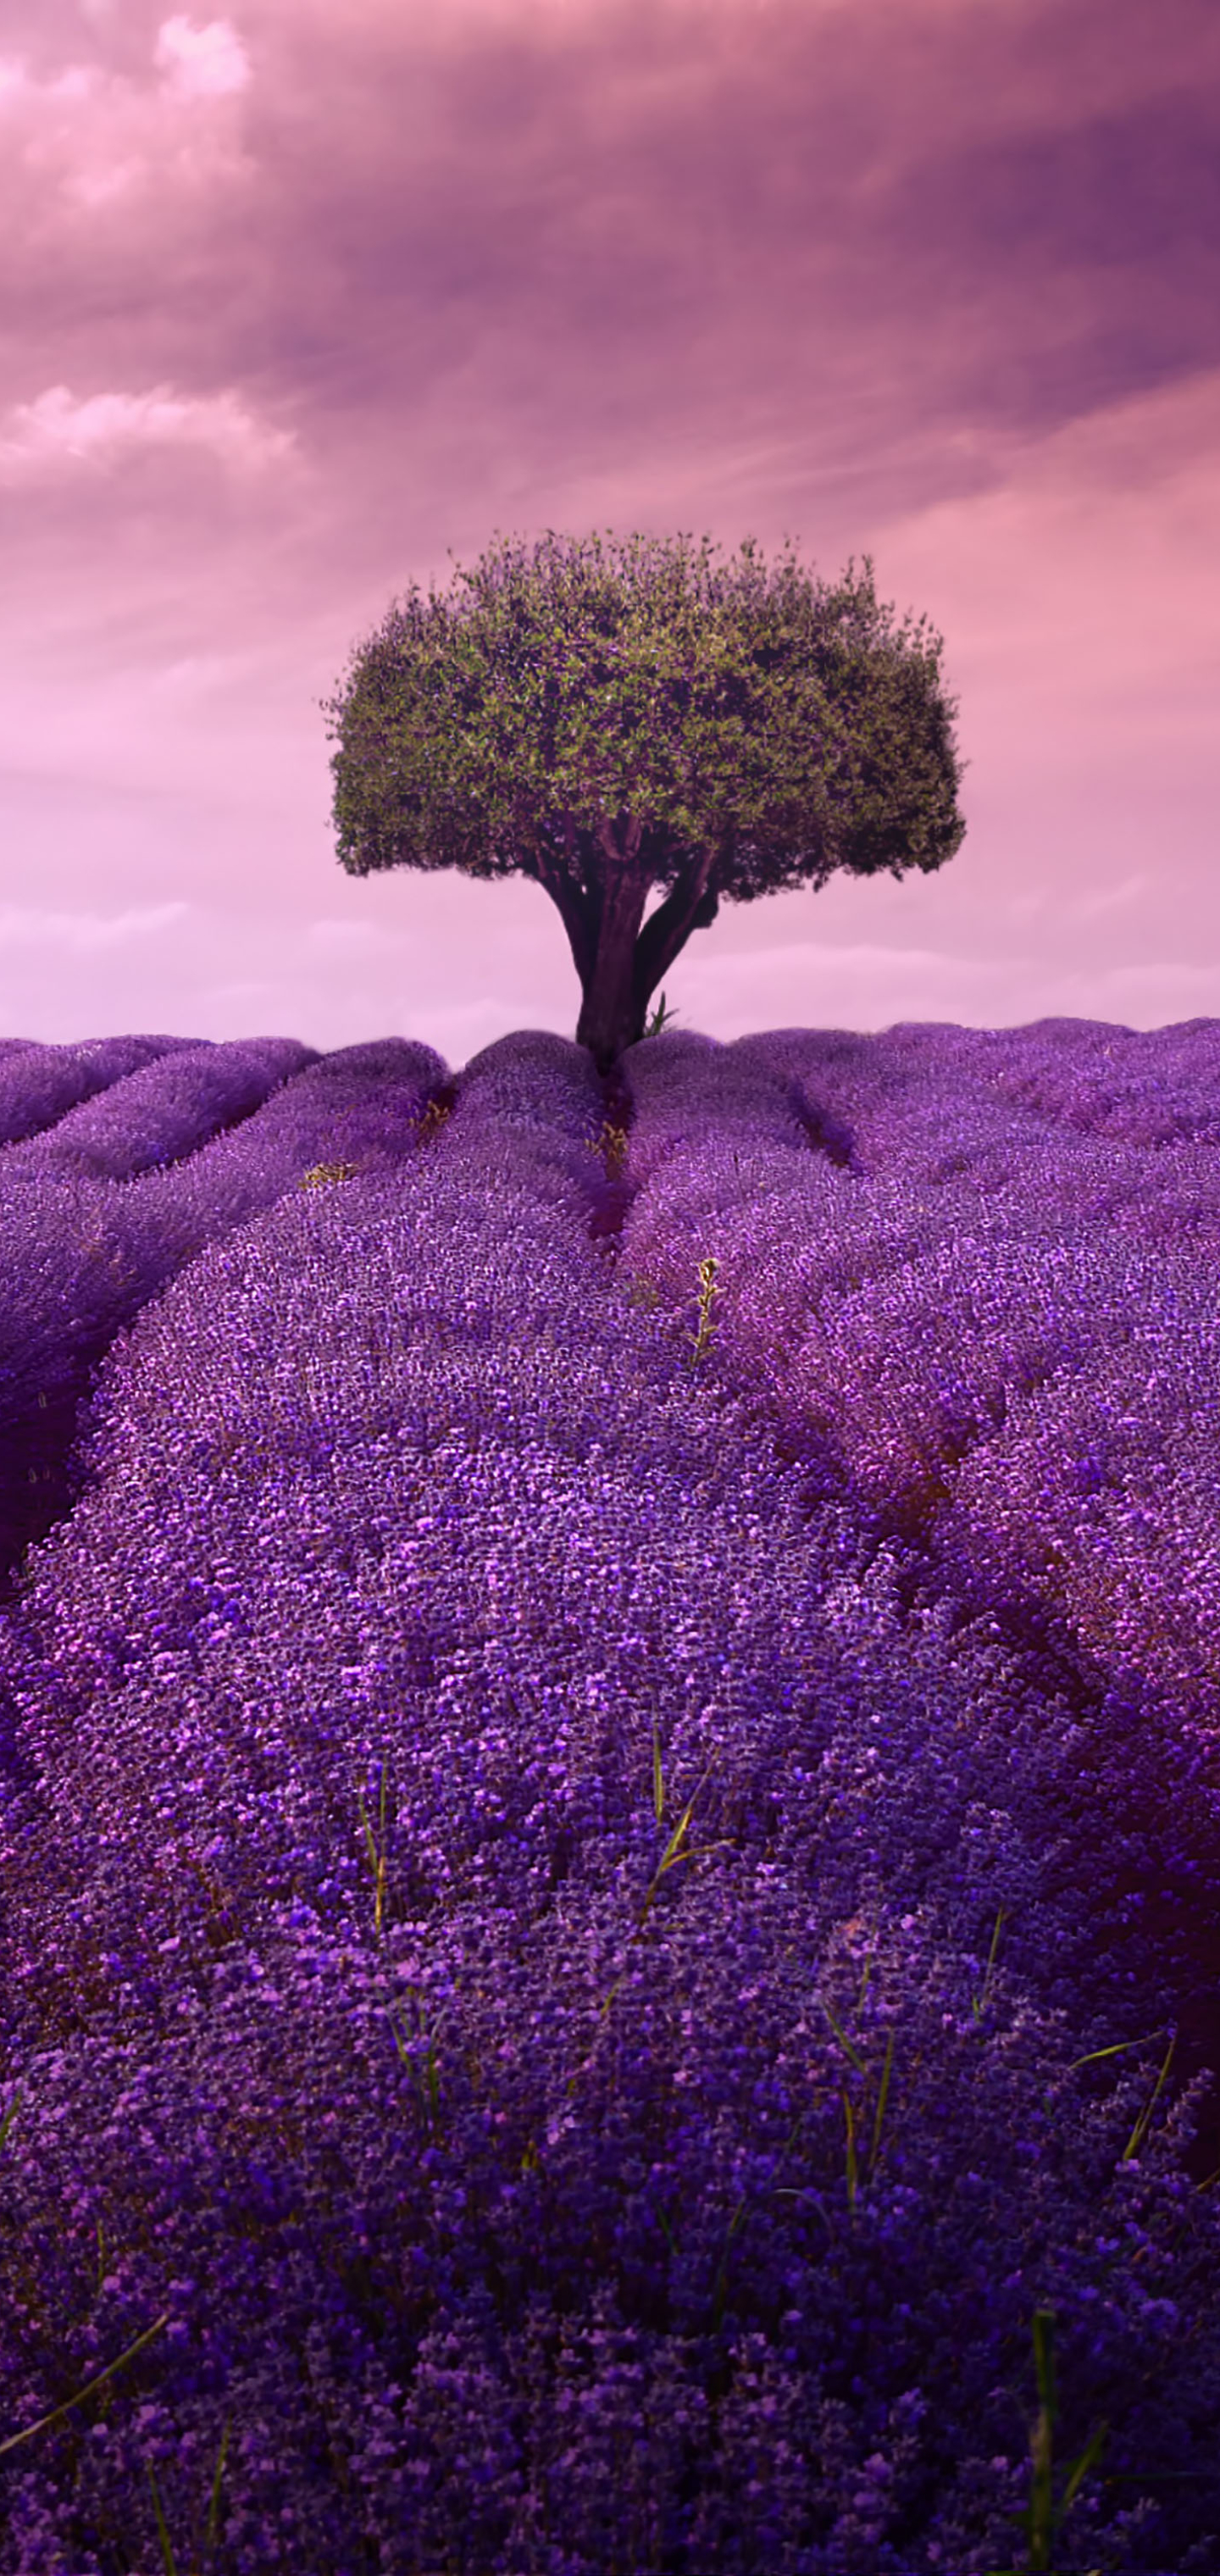  Lavender HQ Background Images